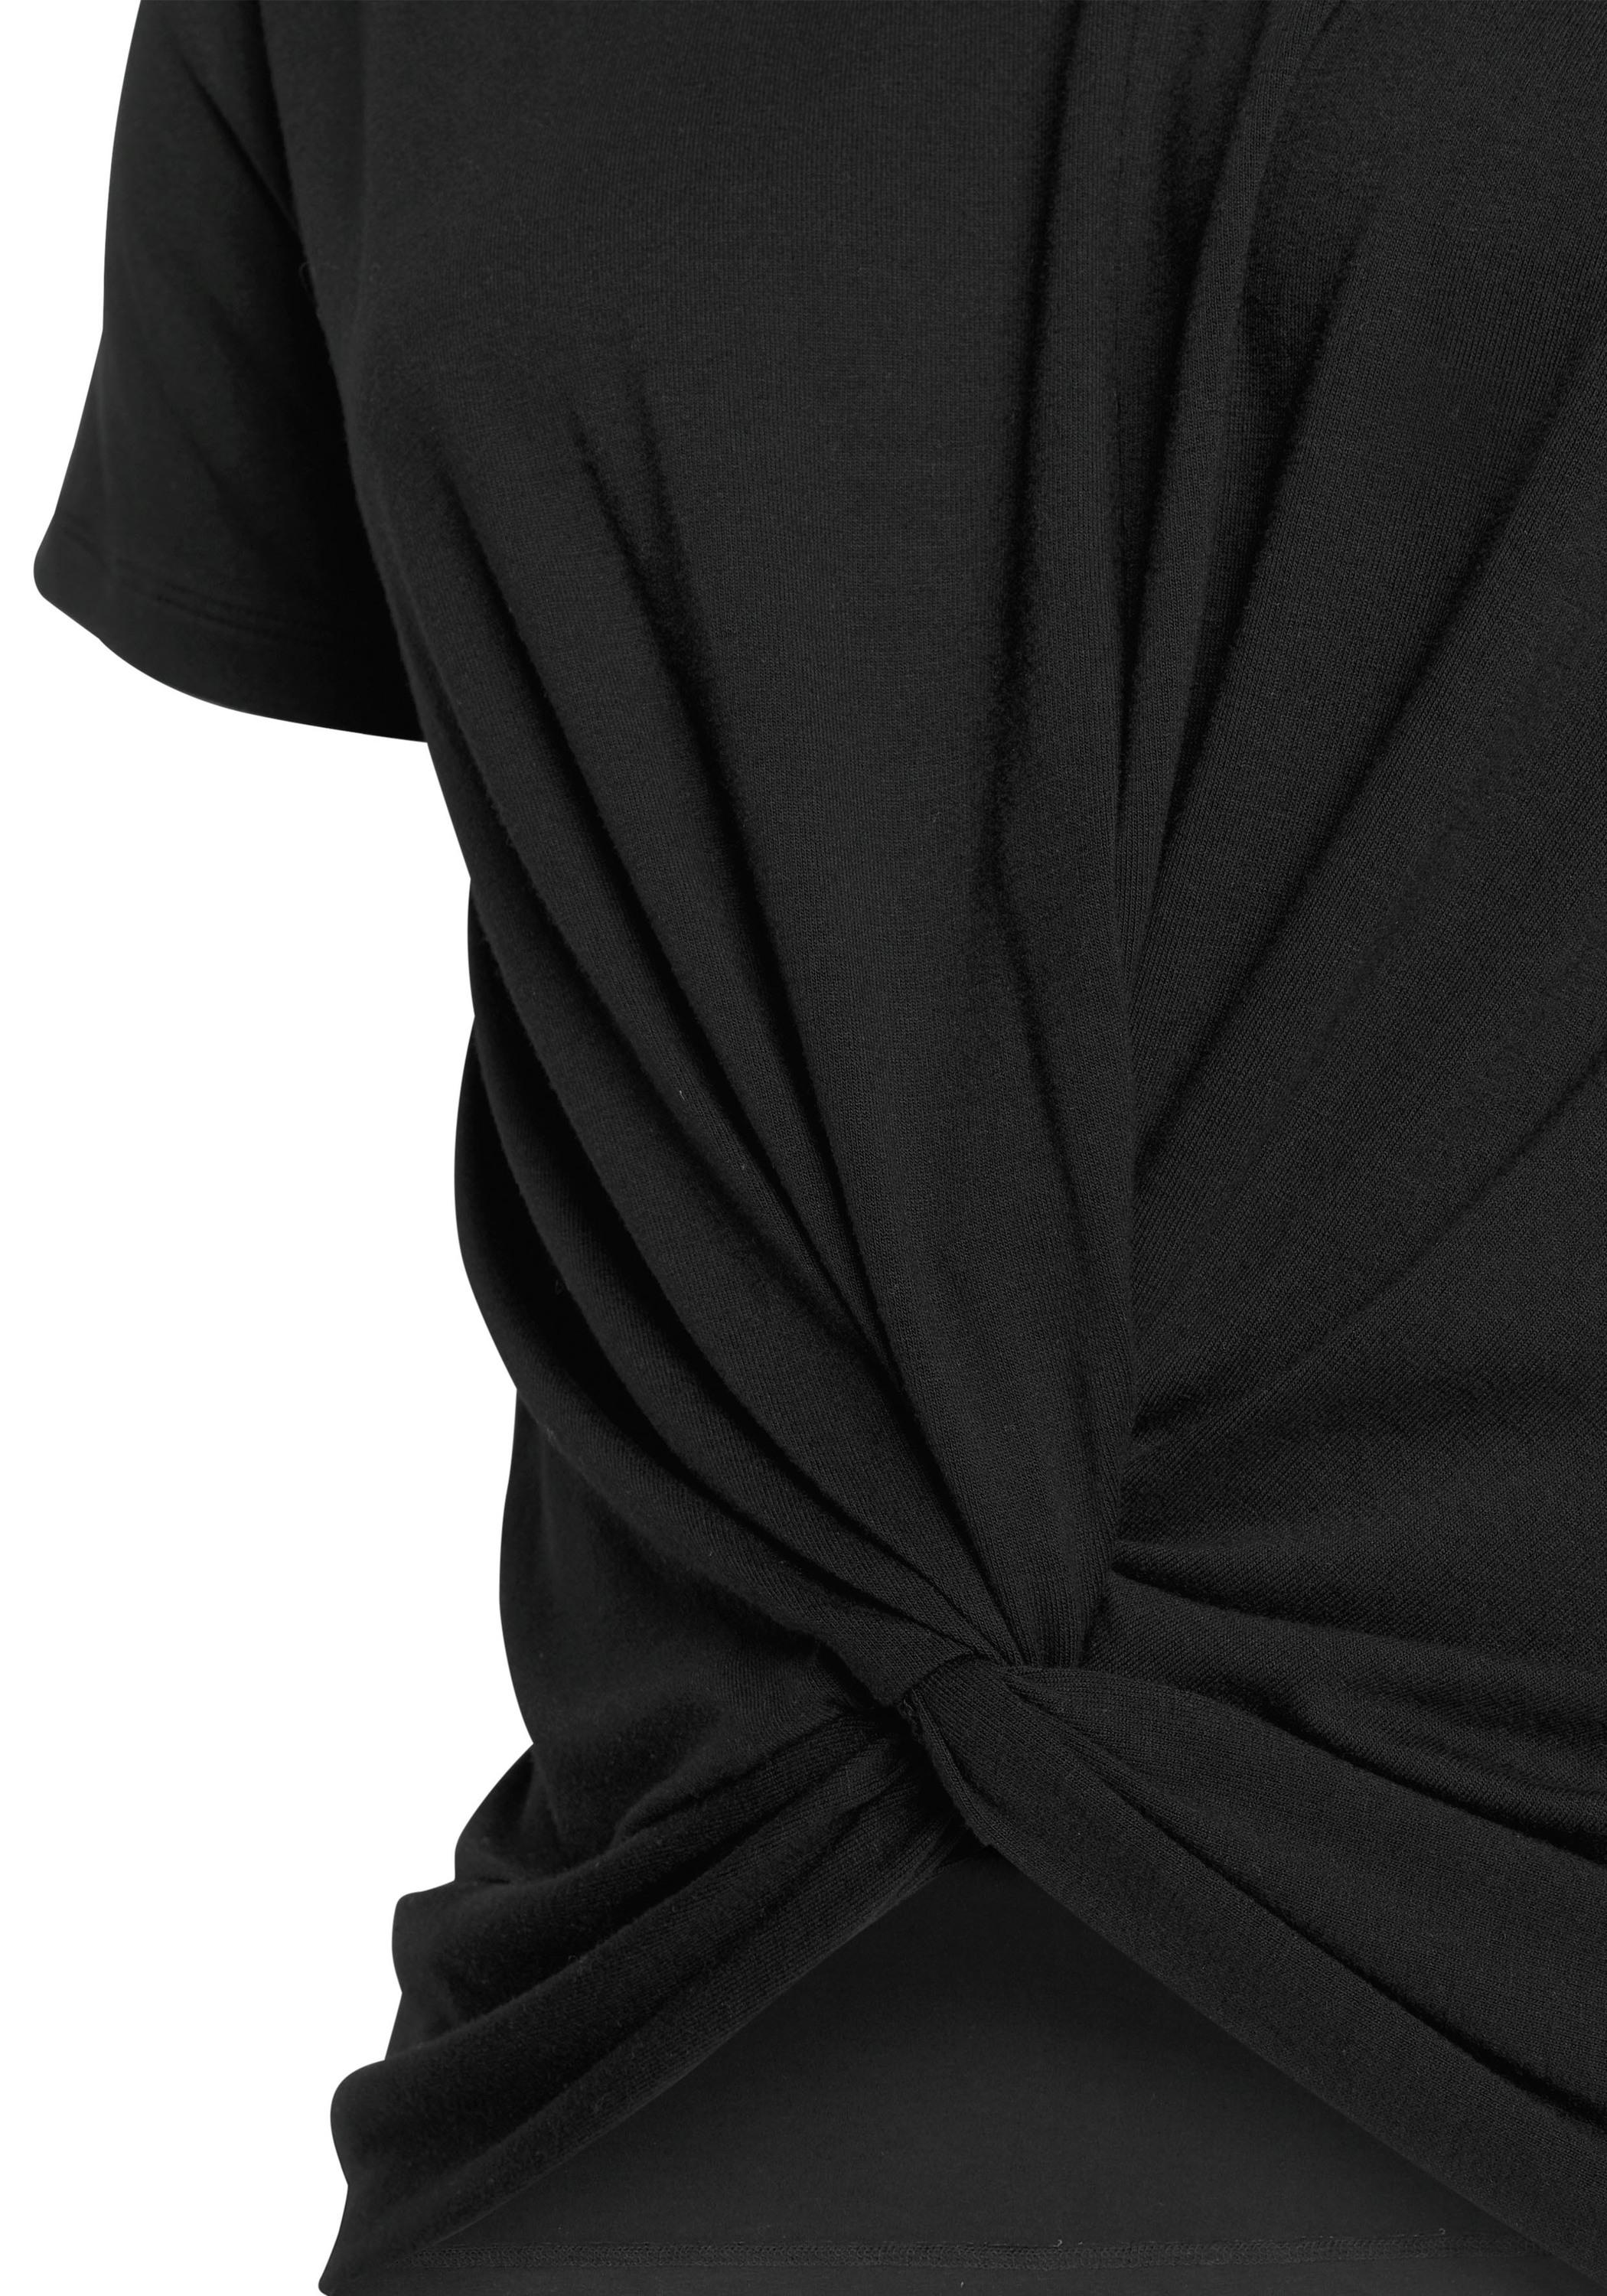 Lascana T-Shirt Damen schwarz im Online Shop von SportScheck kaufen